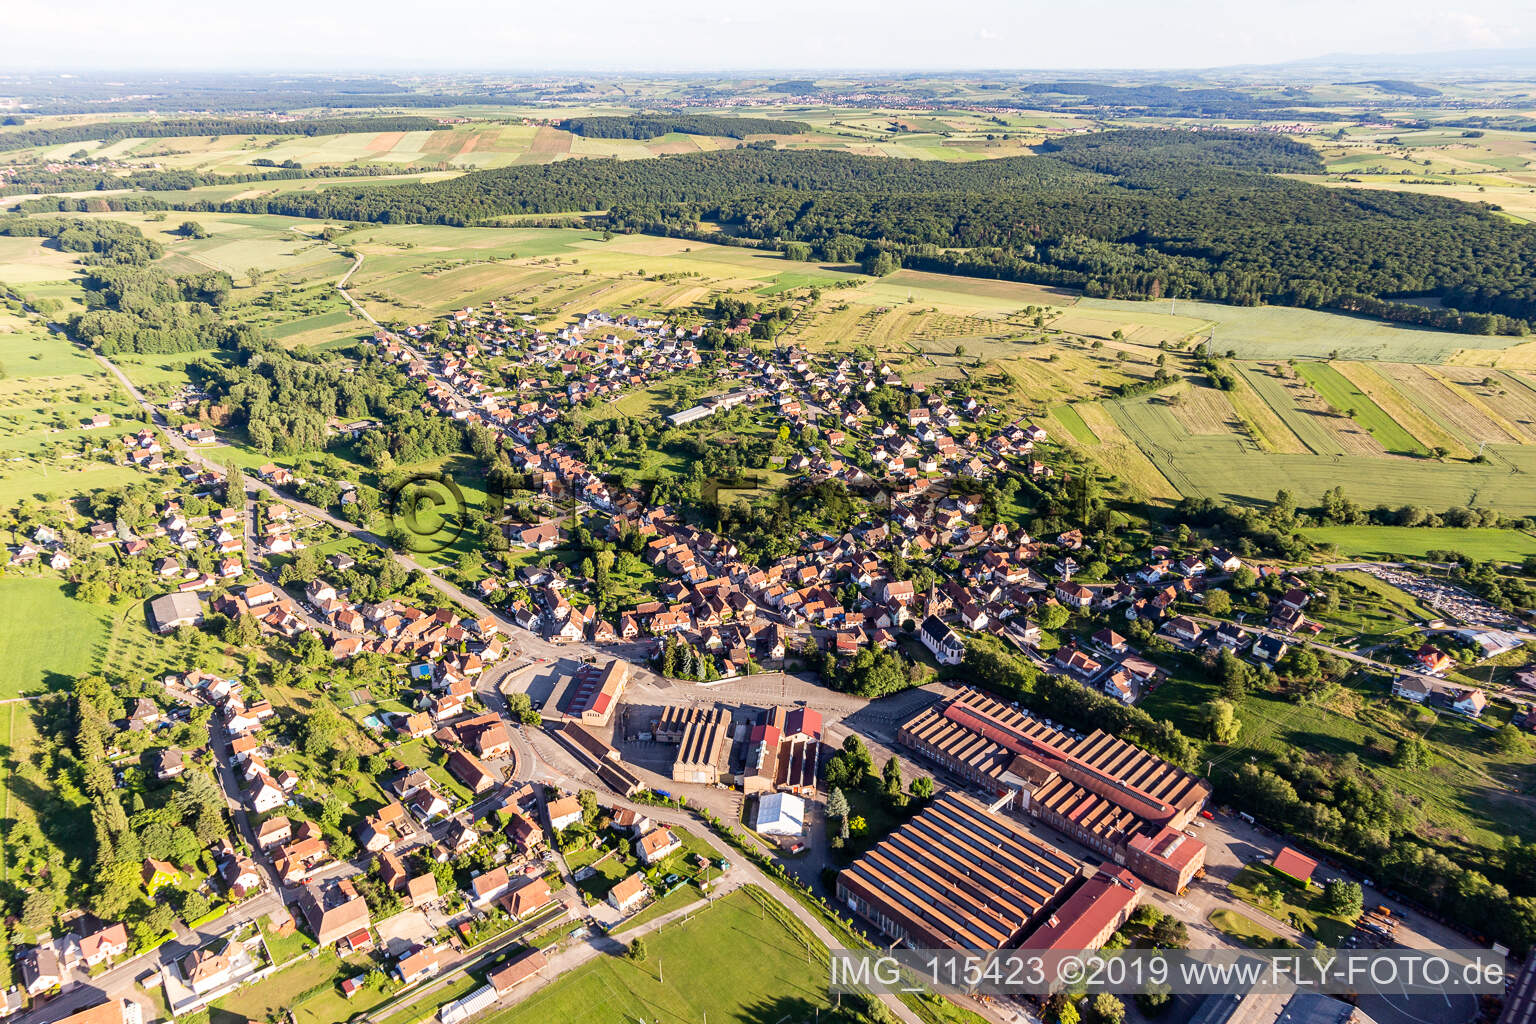 Zinswiller im Bundesland Bas-Rhin, Frankreich von der Drohne aus gesehen